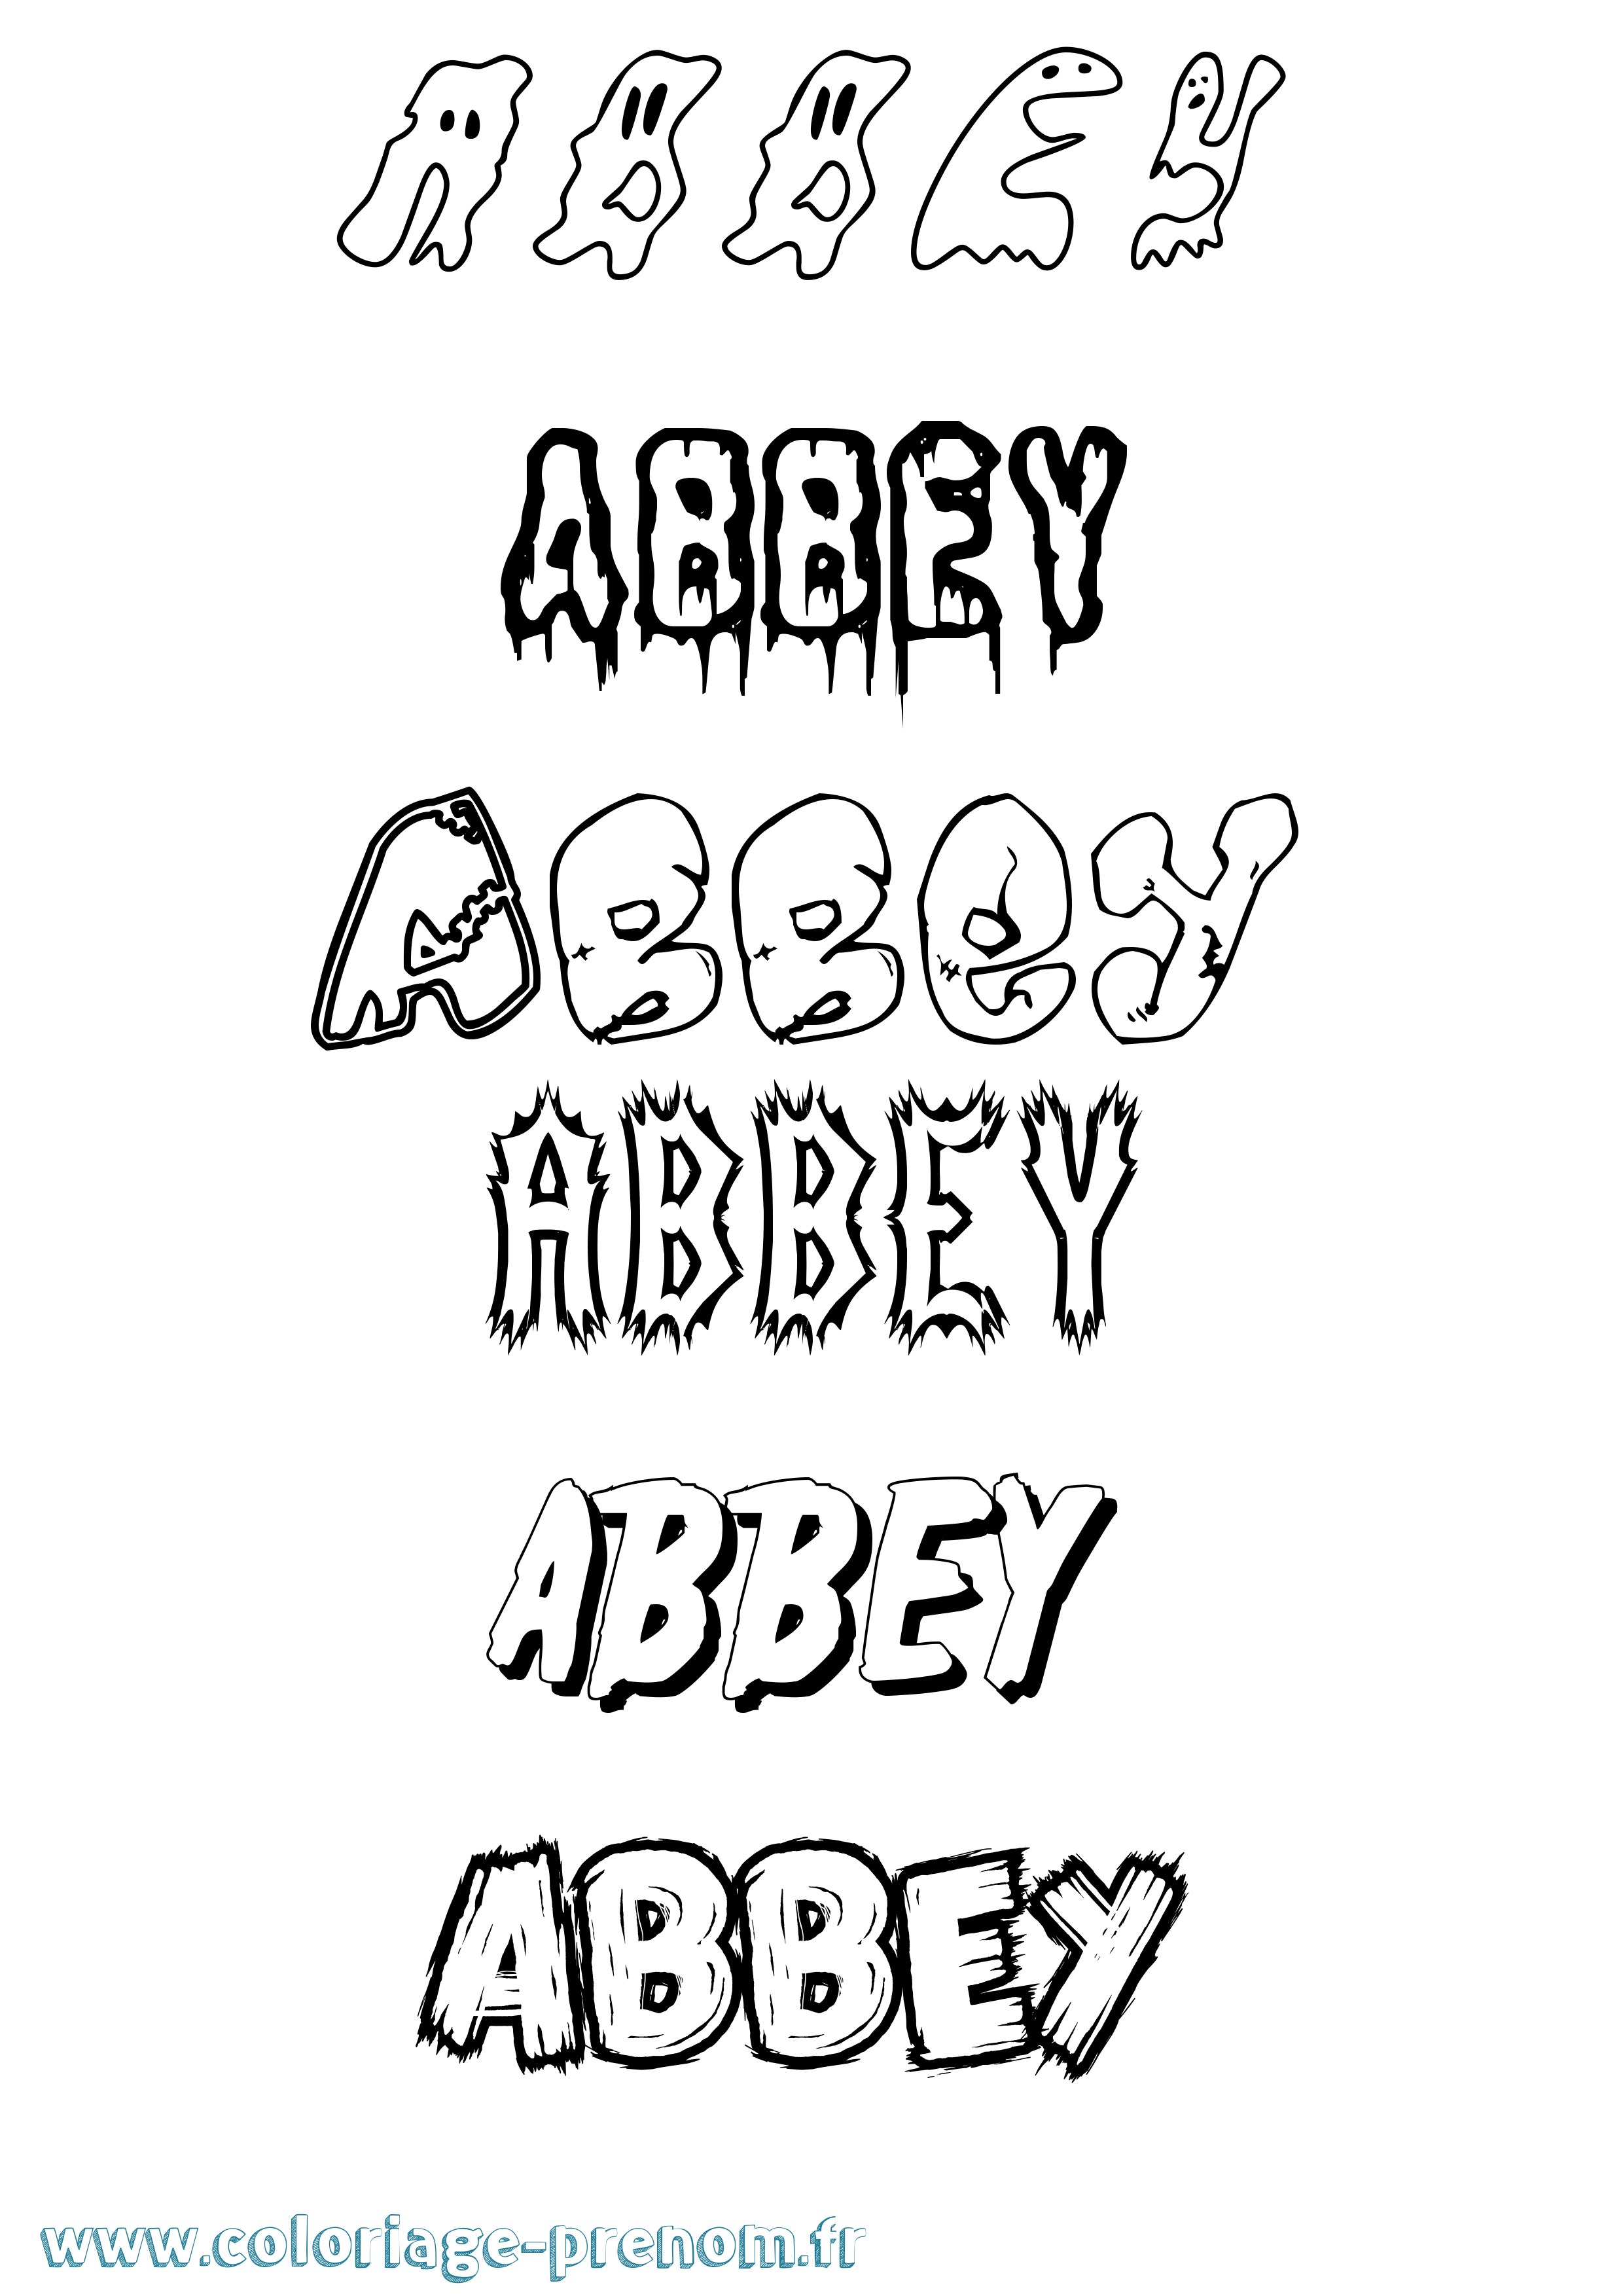 Coloriage prénom Abbey Frisson